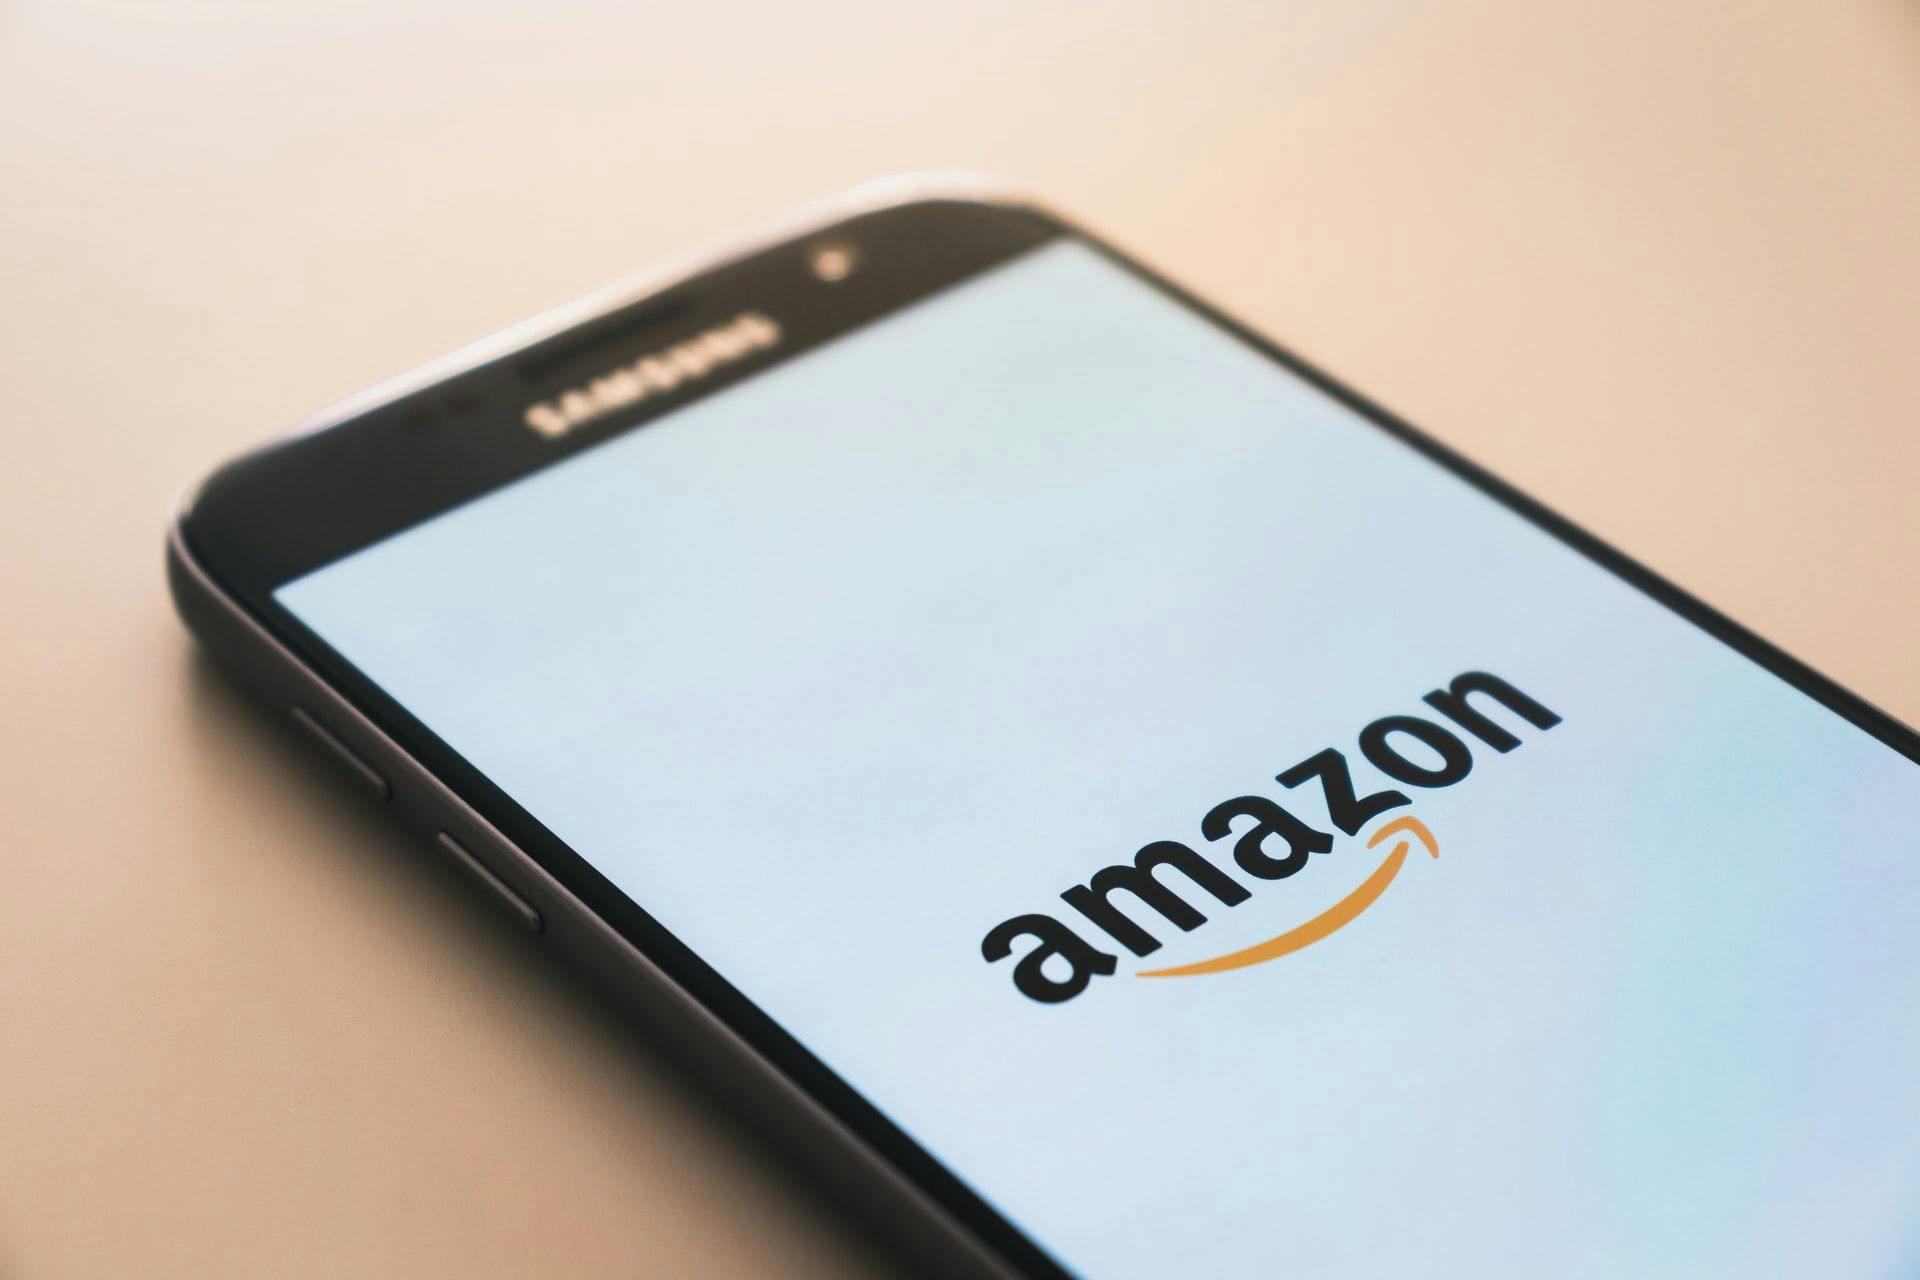 Законно или нет: суд вынес вердикт по делу о налоговых льготах для Amazon в Люксембурге